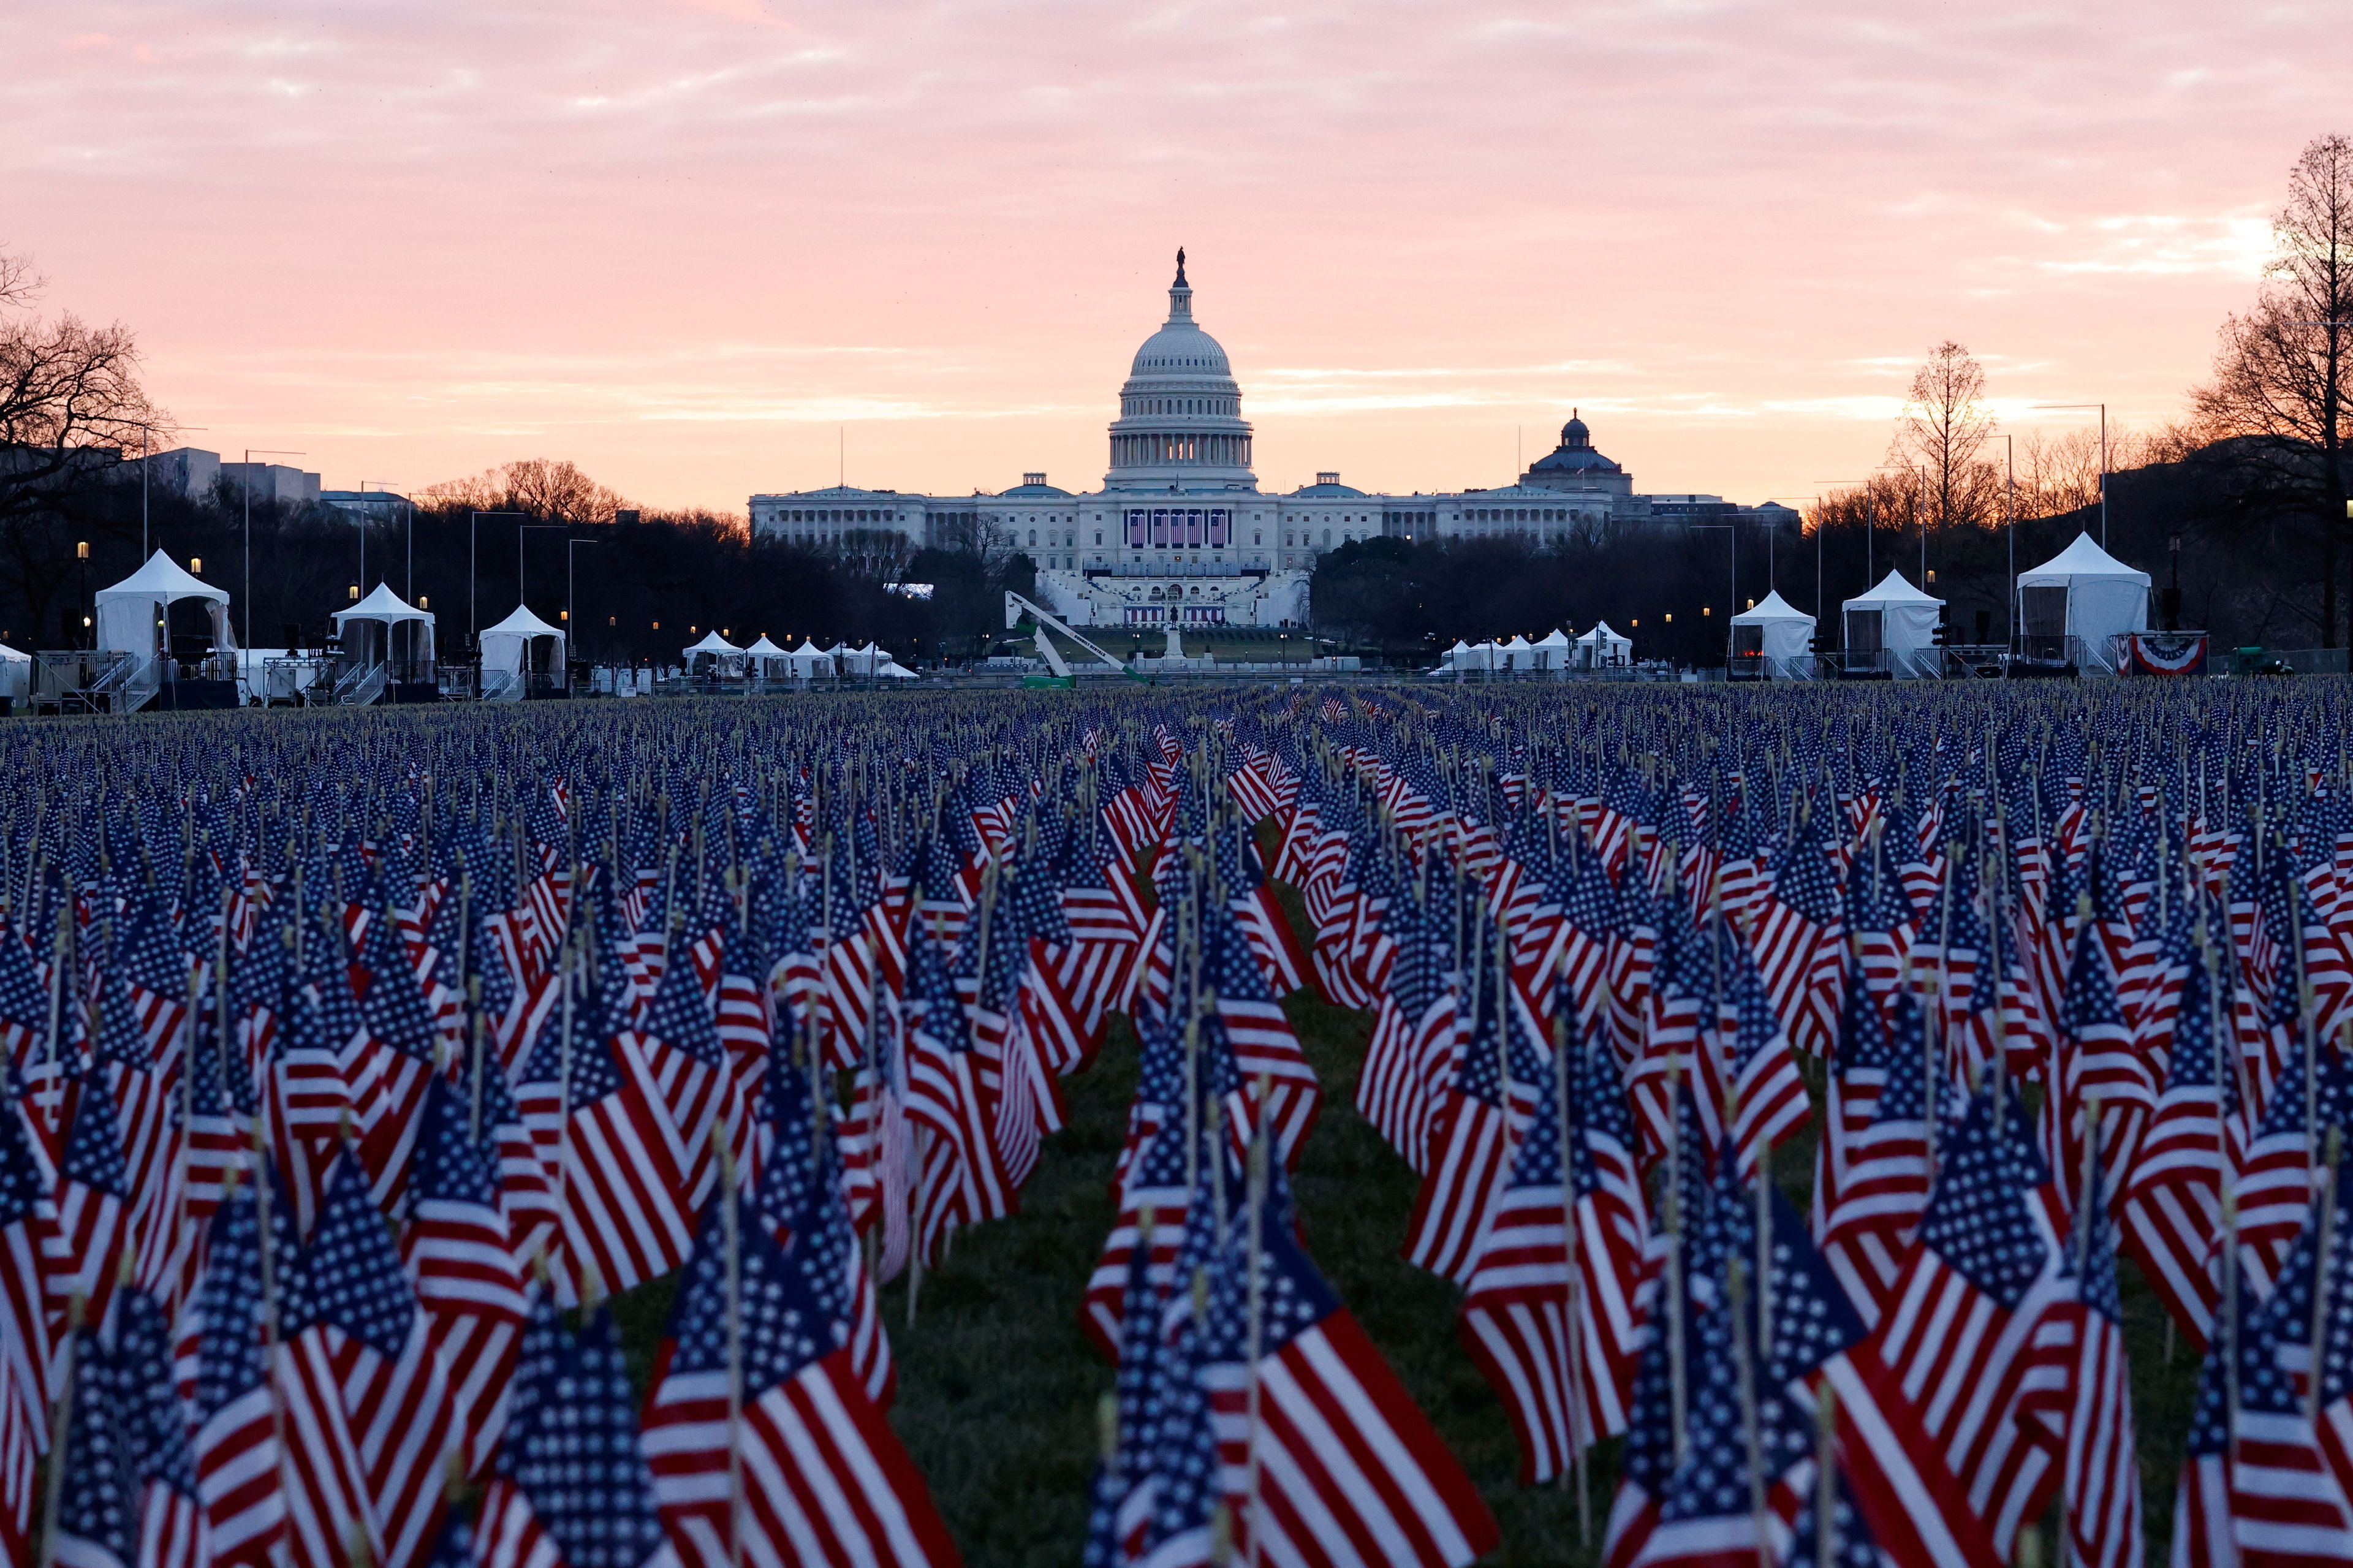 200.000 banderas darán color a la explanada del Capitolio (Reuters)